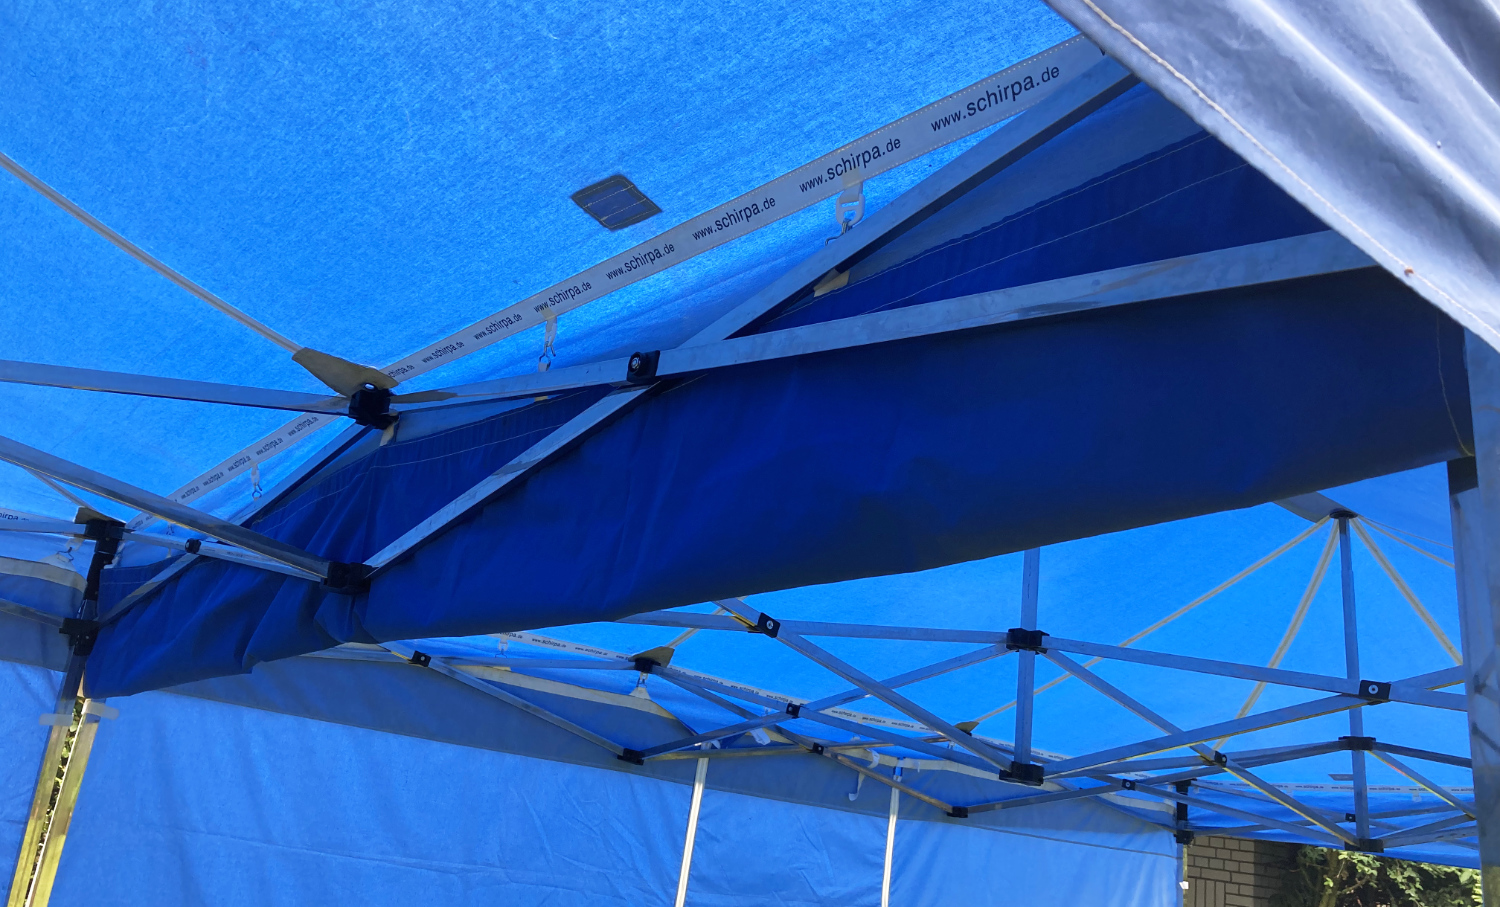 Die Regenrinne in kurz oder lang zur Verbindung von zwei Faltpavillons wird oben innen in die Zelte montiert.